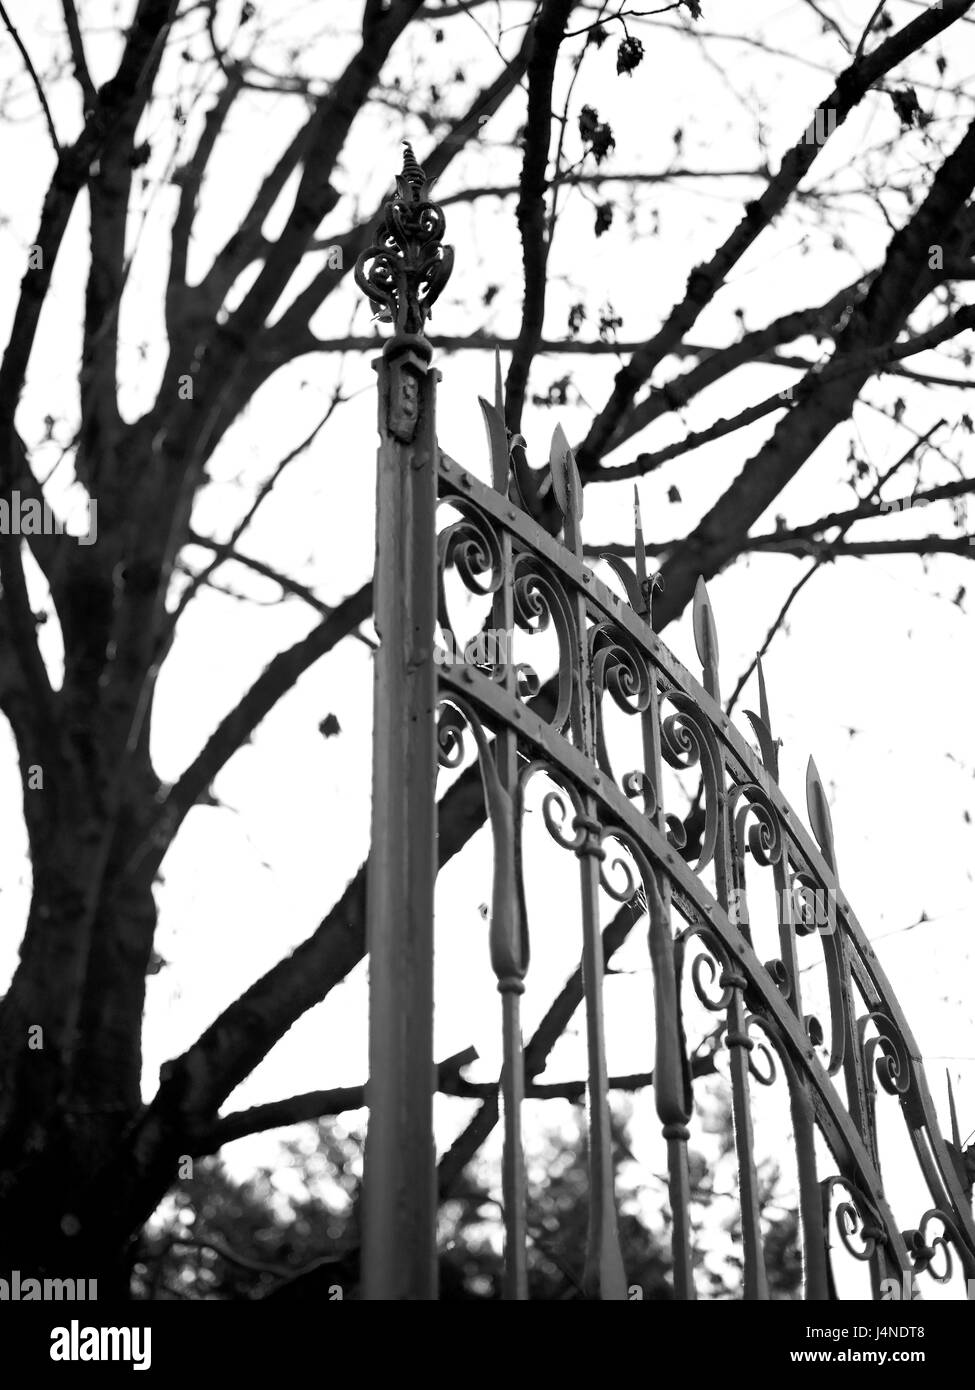 Cancello di ferro, albero, dettaglio s/w, Foto Stock